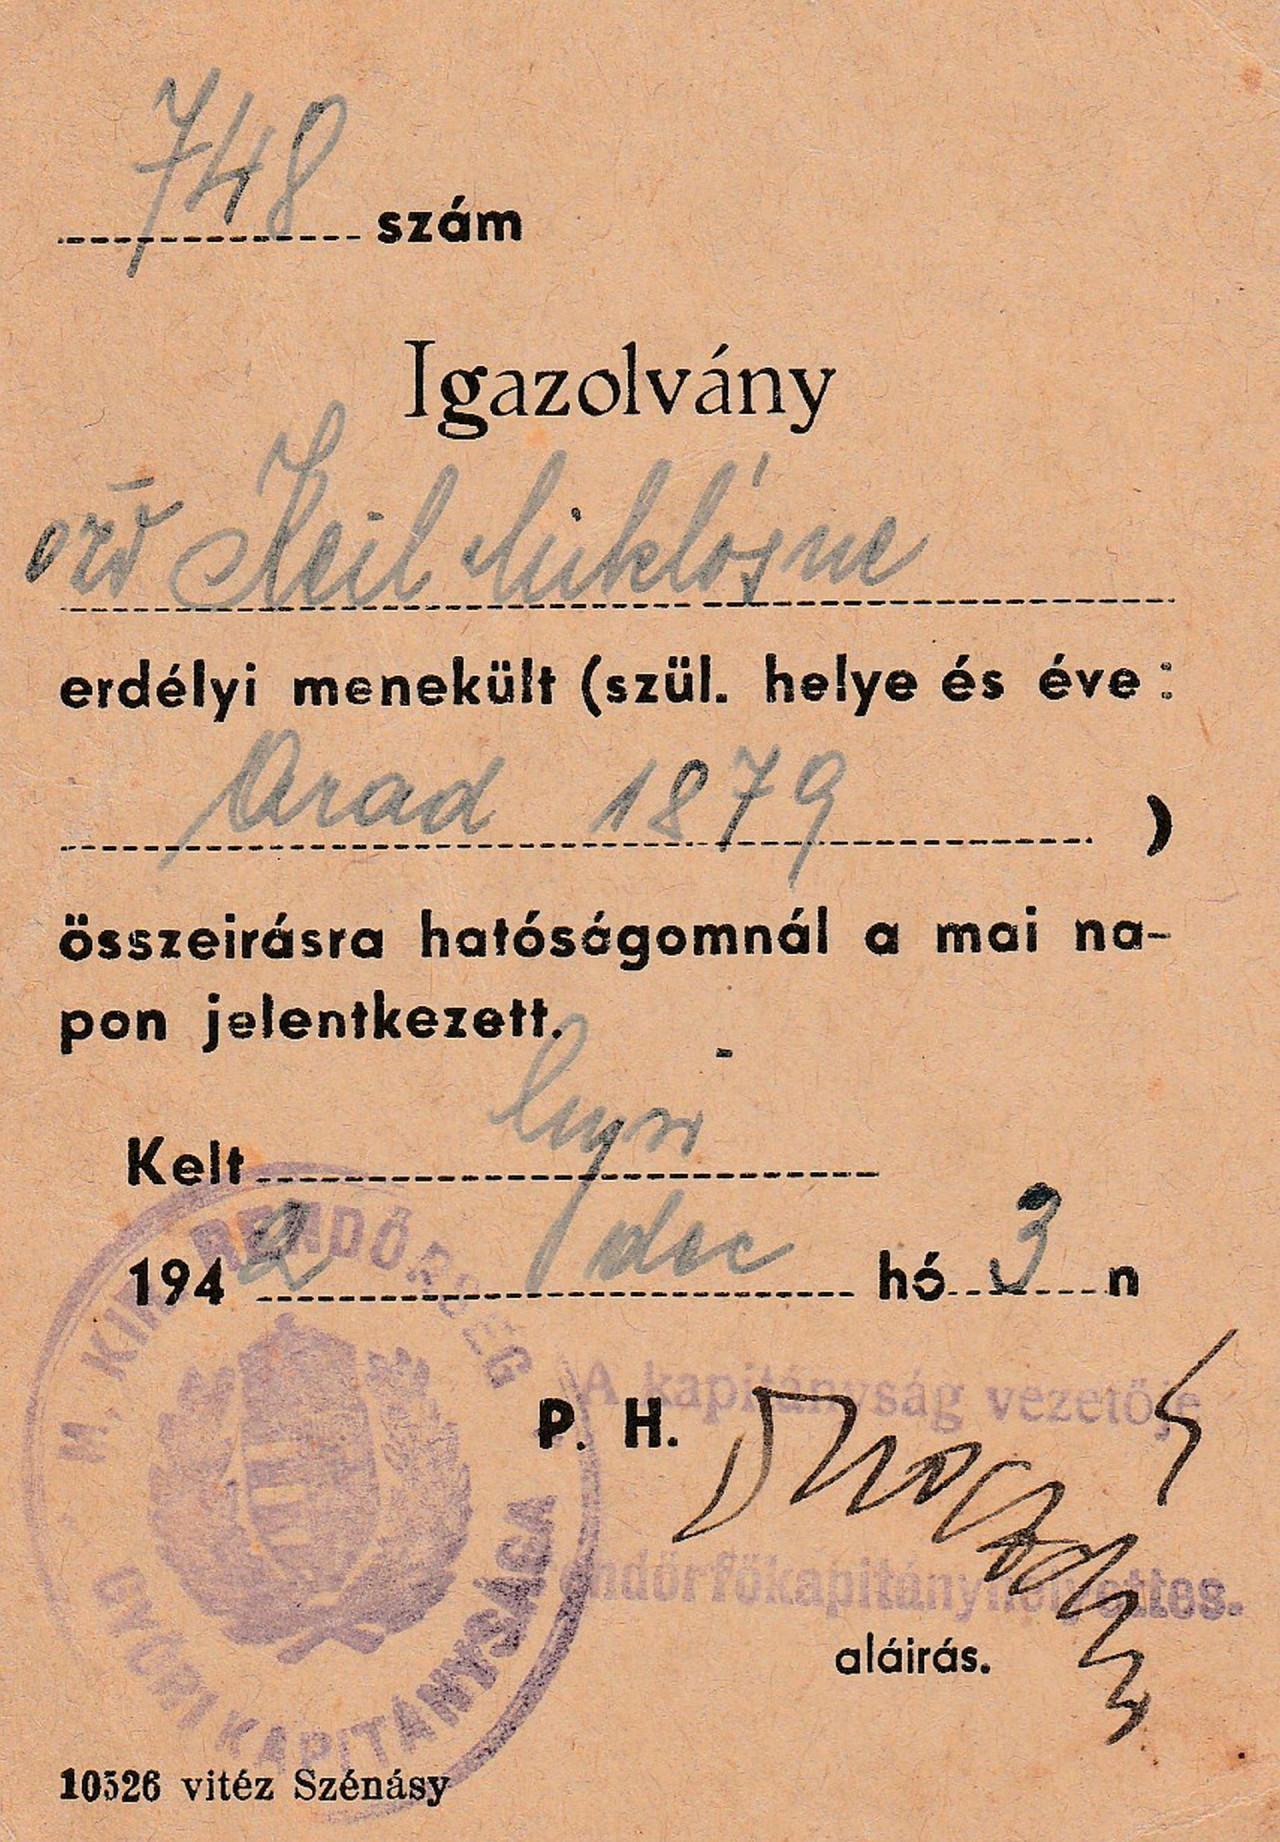 Keil Miklósné Gelcz Éva igazolványa (Fotó: A szerző családi archívuma)